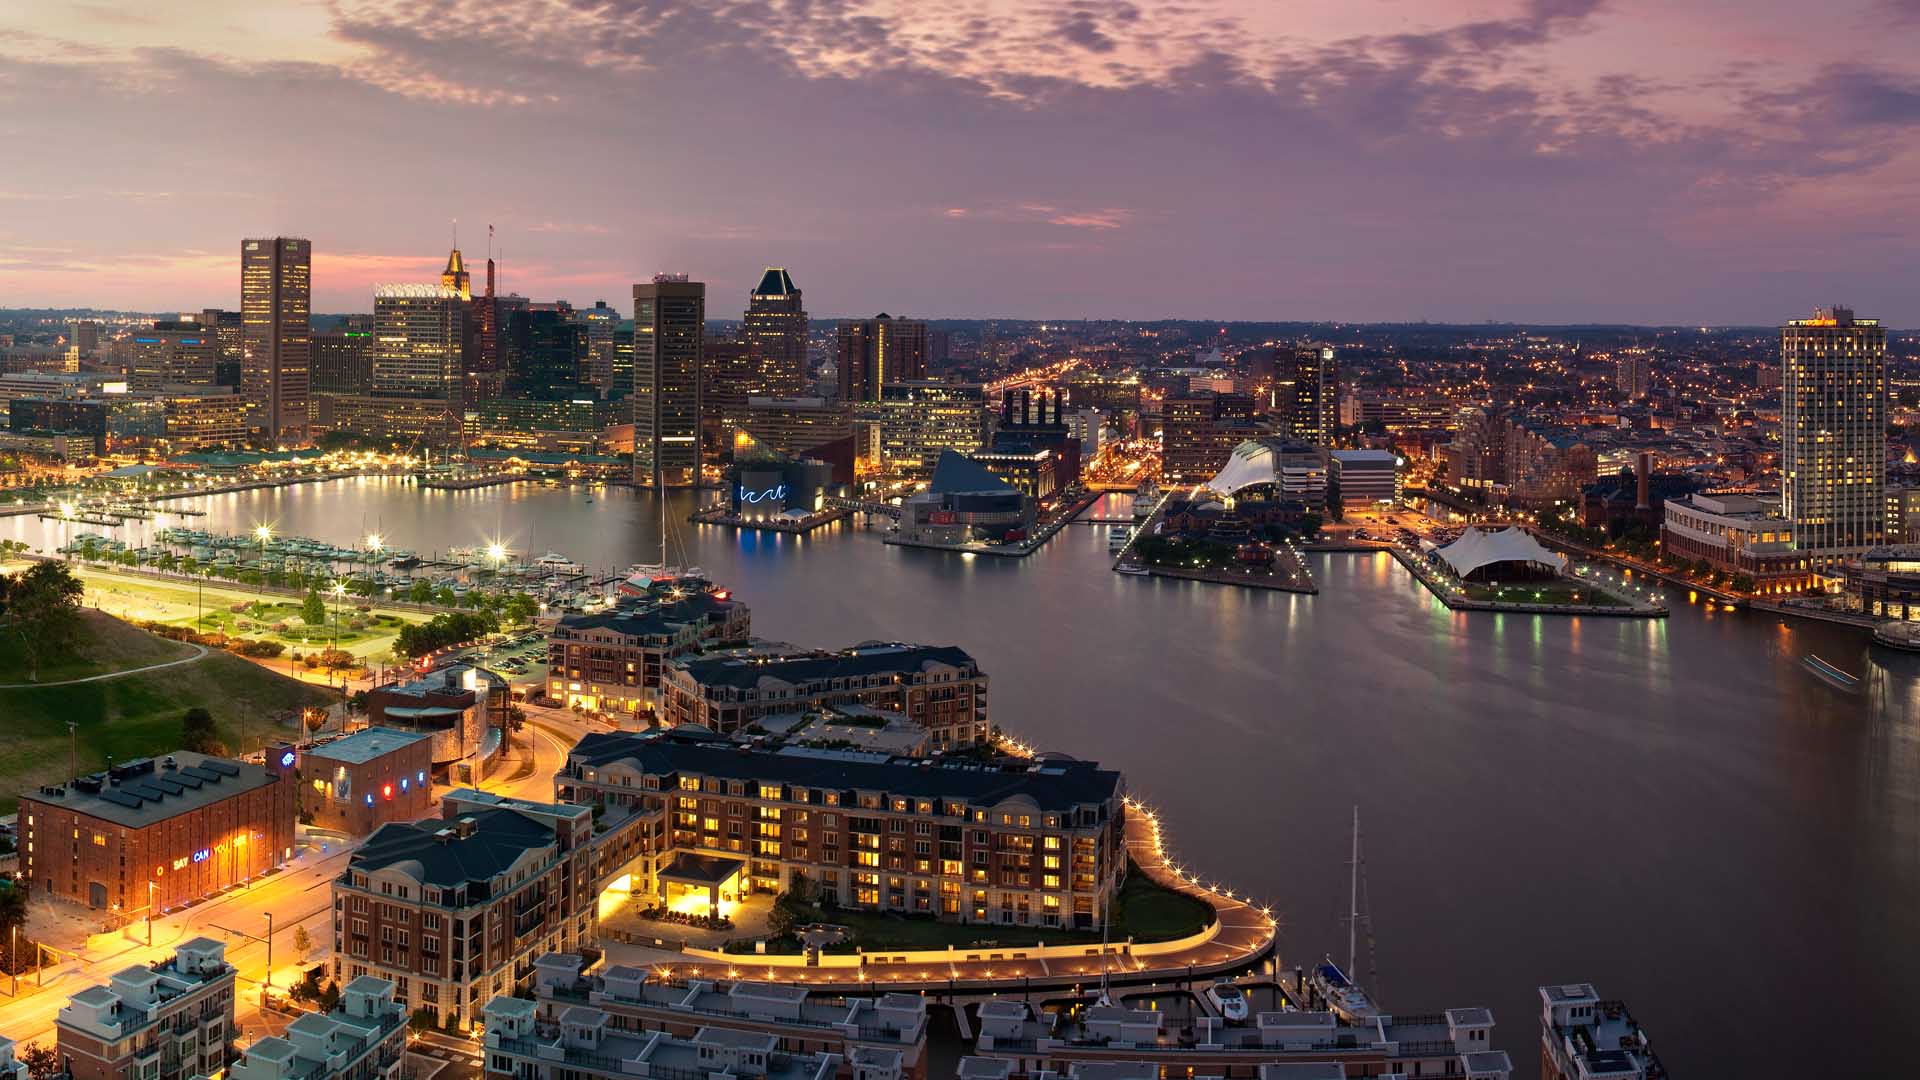 Explore Baltimore A Major Cultural Center